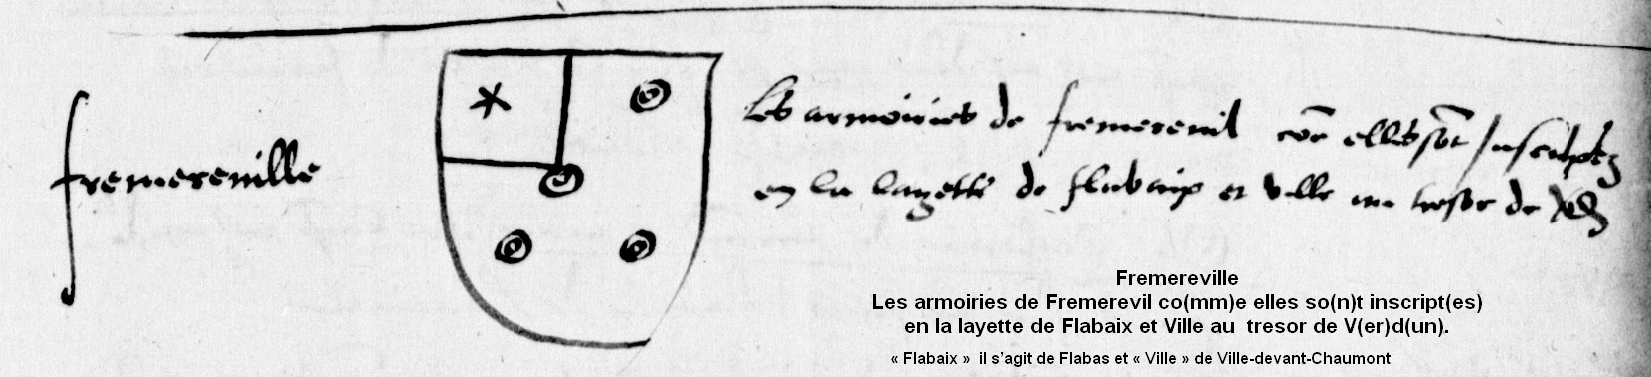 Blason de Frémeréville en 1573 avec le texte de 1573